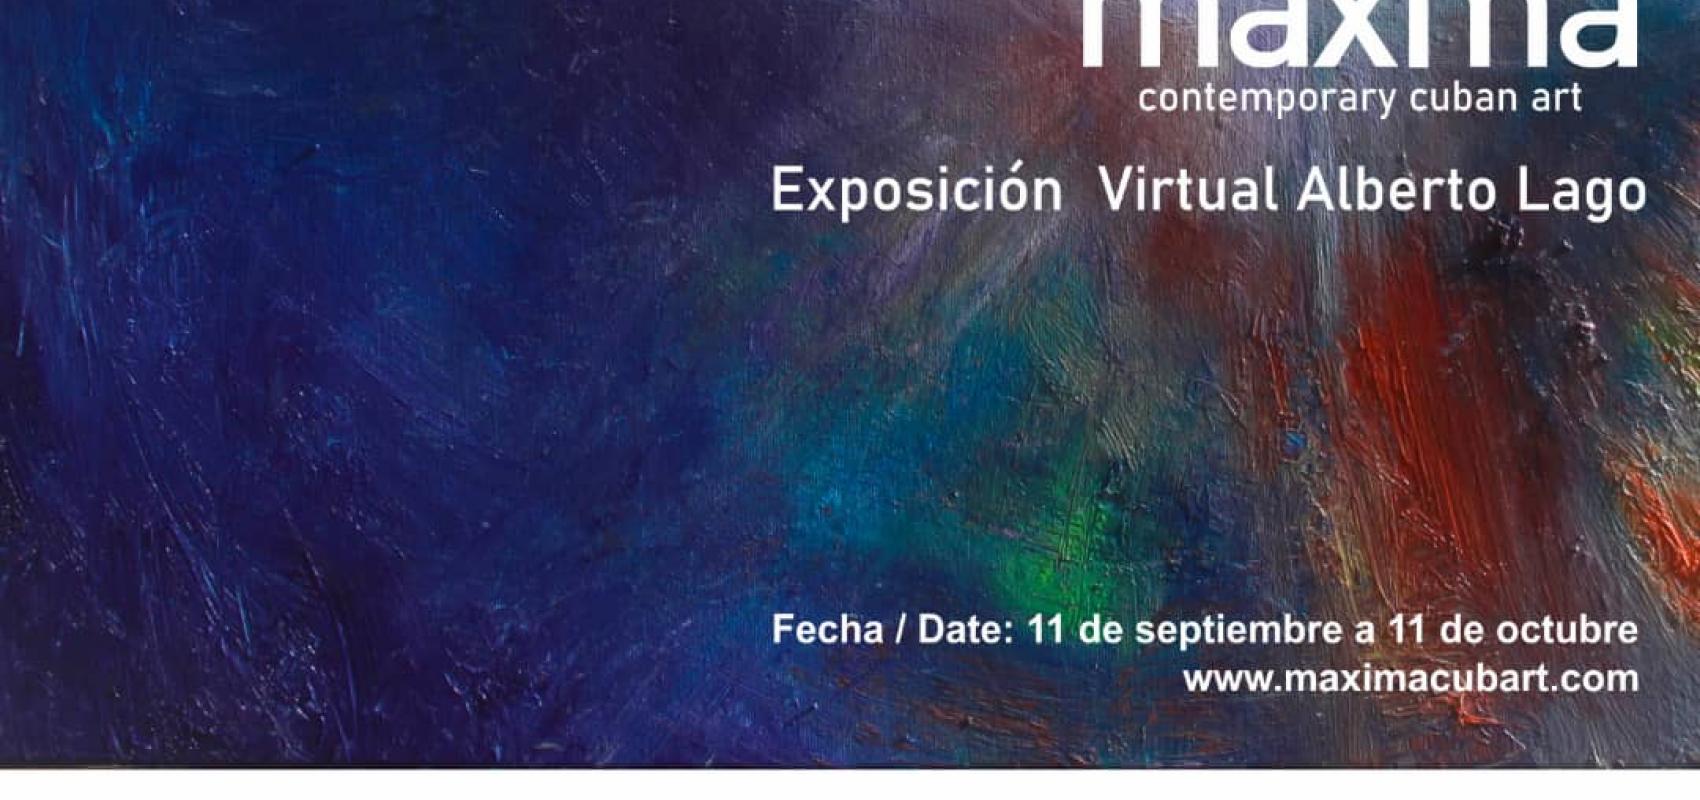 Invitación de la muestra virtual de Alberto Lago en Máxima.